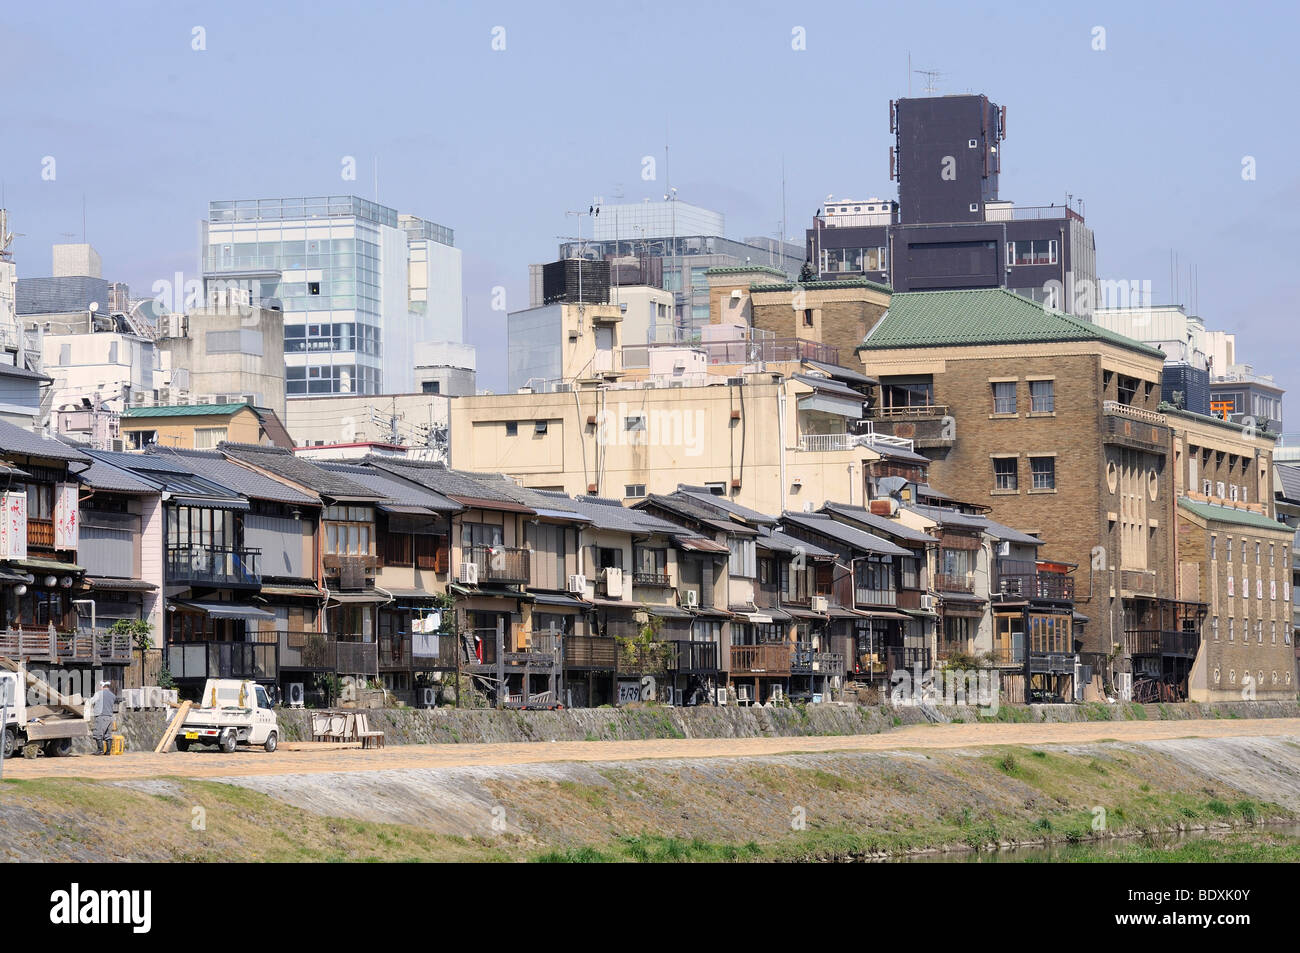 Maisons traditionnelles, un quartier de divertissement, et de gratte-ciel dans le centre de Kyoto sur la rivière Kamo, le Japon, l'Asie Banque D'Images